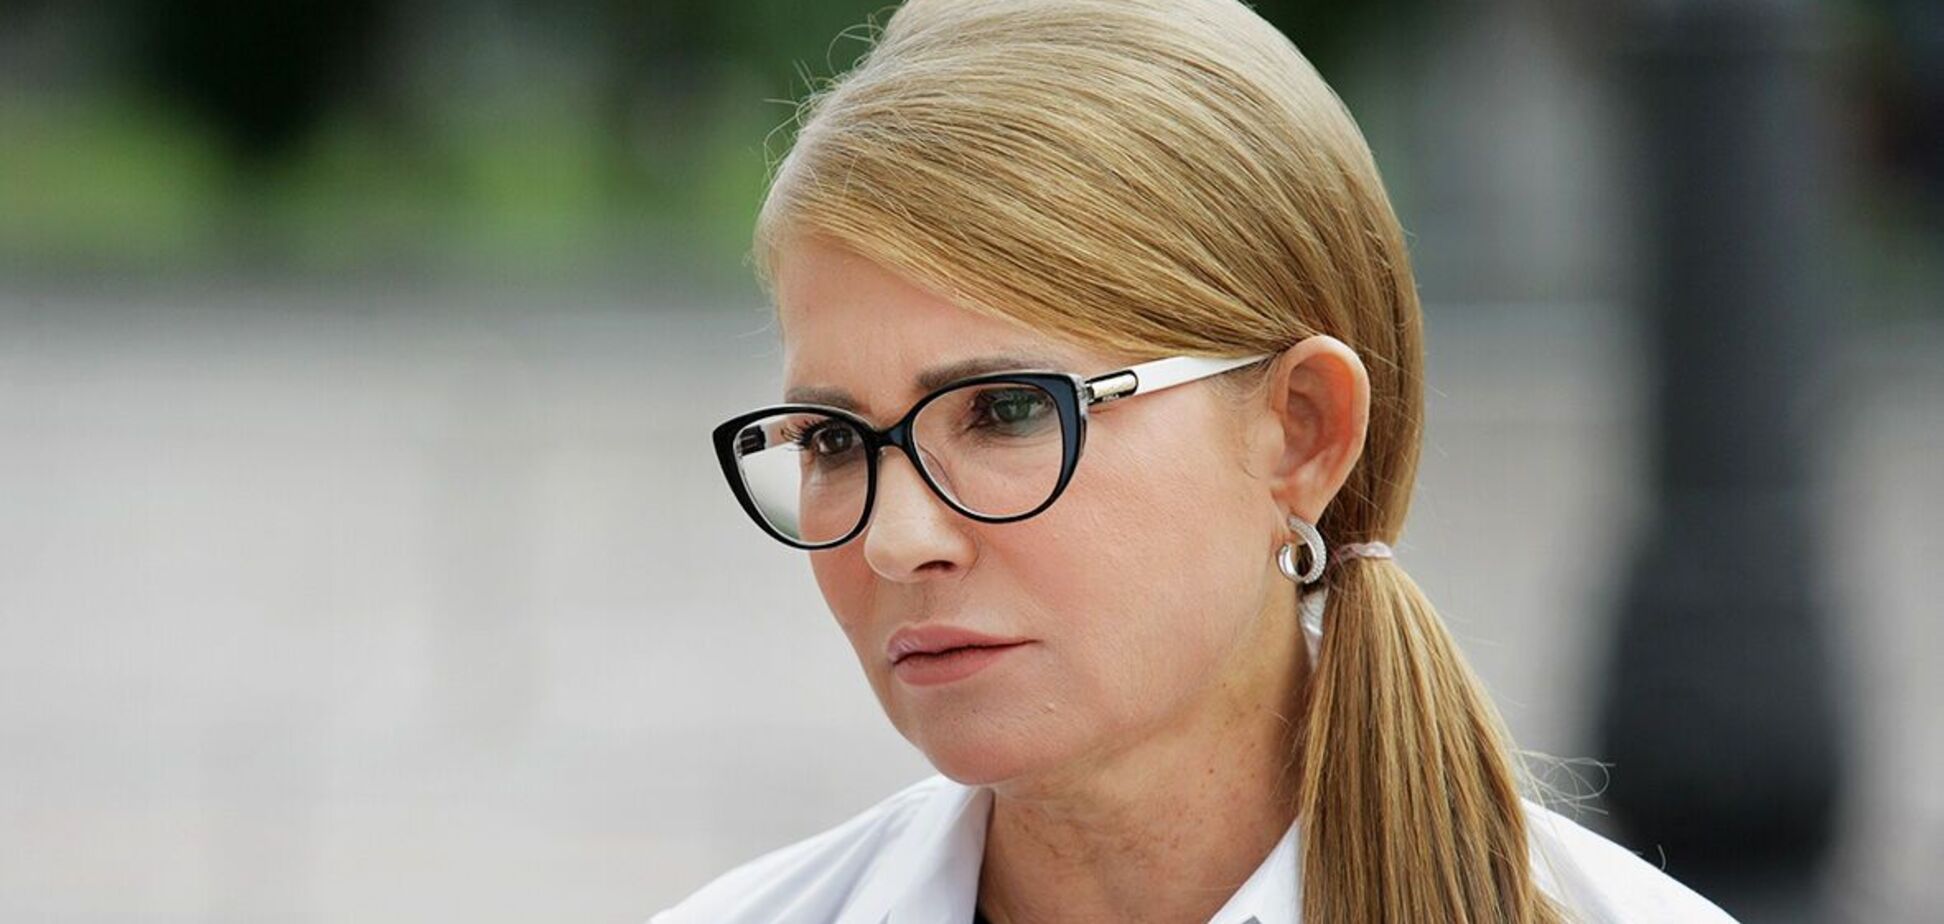 План Юлії Тимошенко здатний захистити людей, вважає експерт